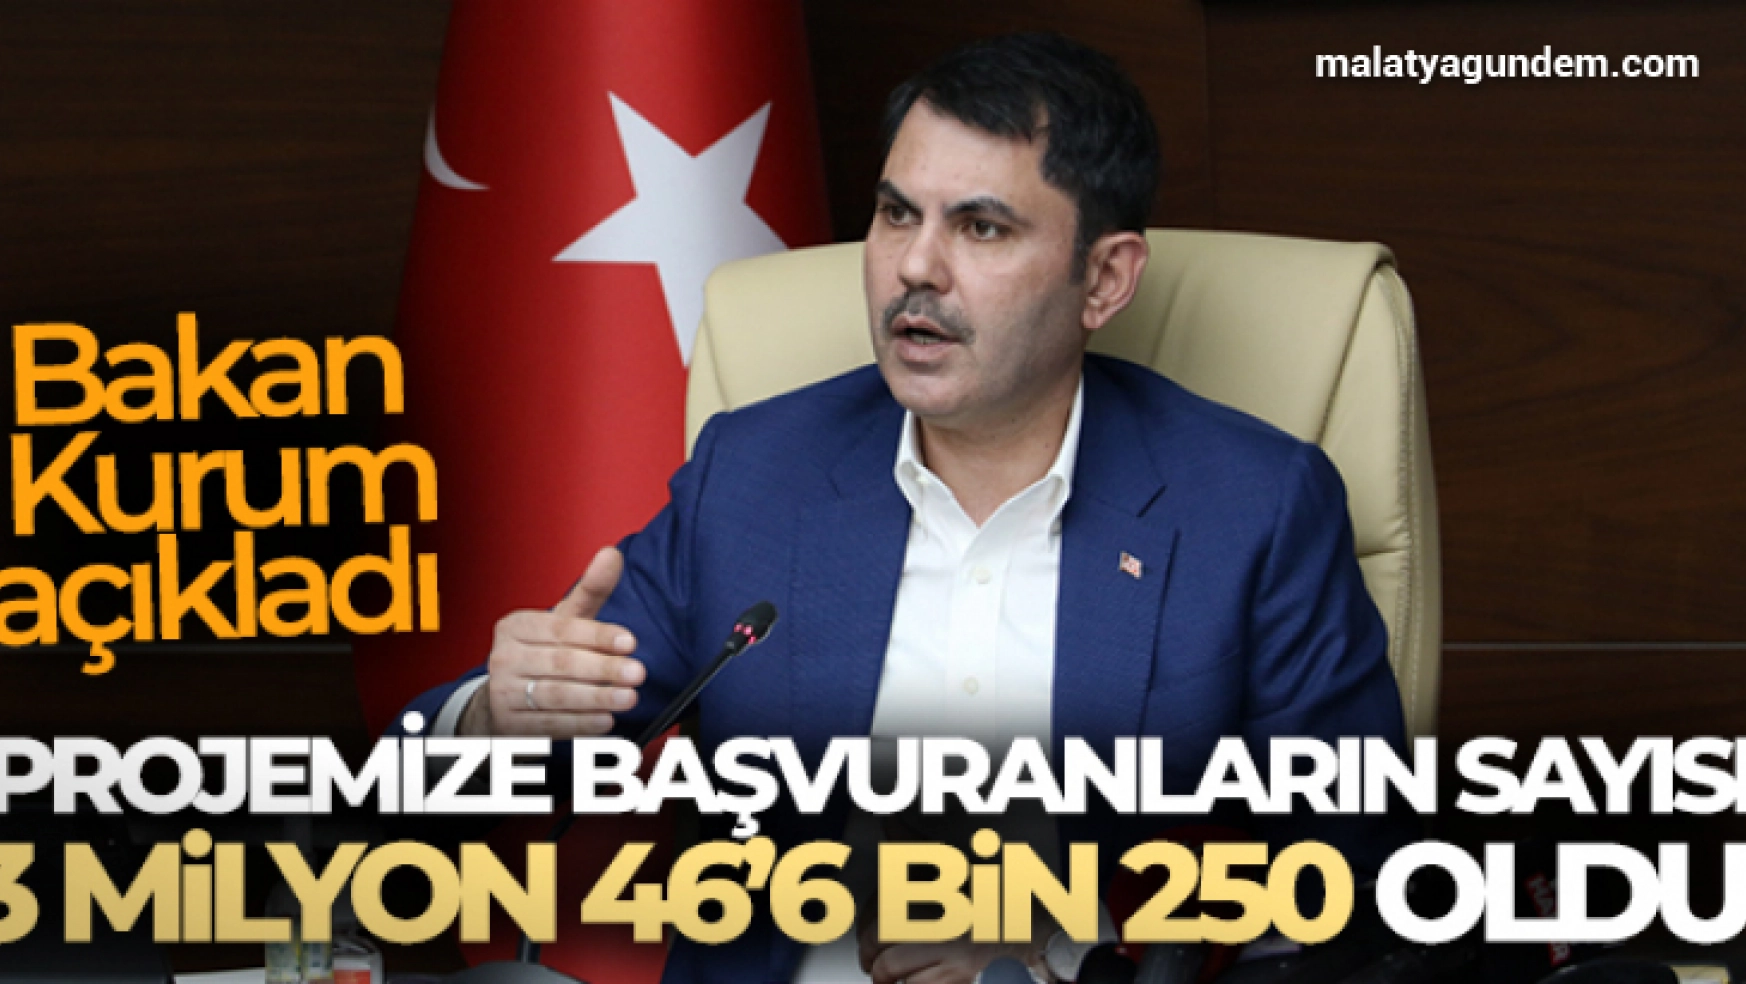 Bakan Kurum: 'Projemize başvuranların sayısı 3 milyon 466 bin 250 oldu'